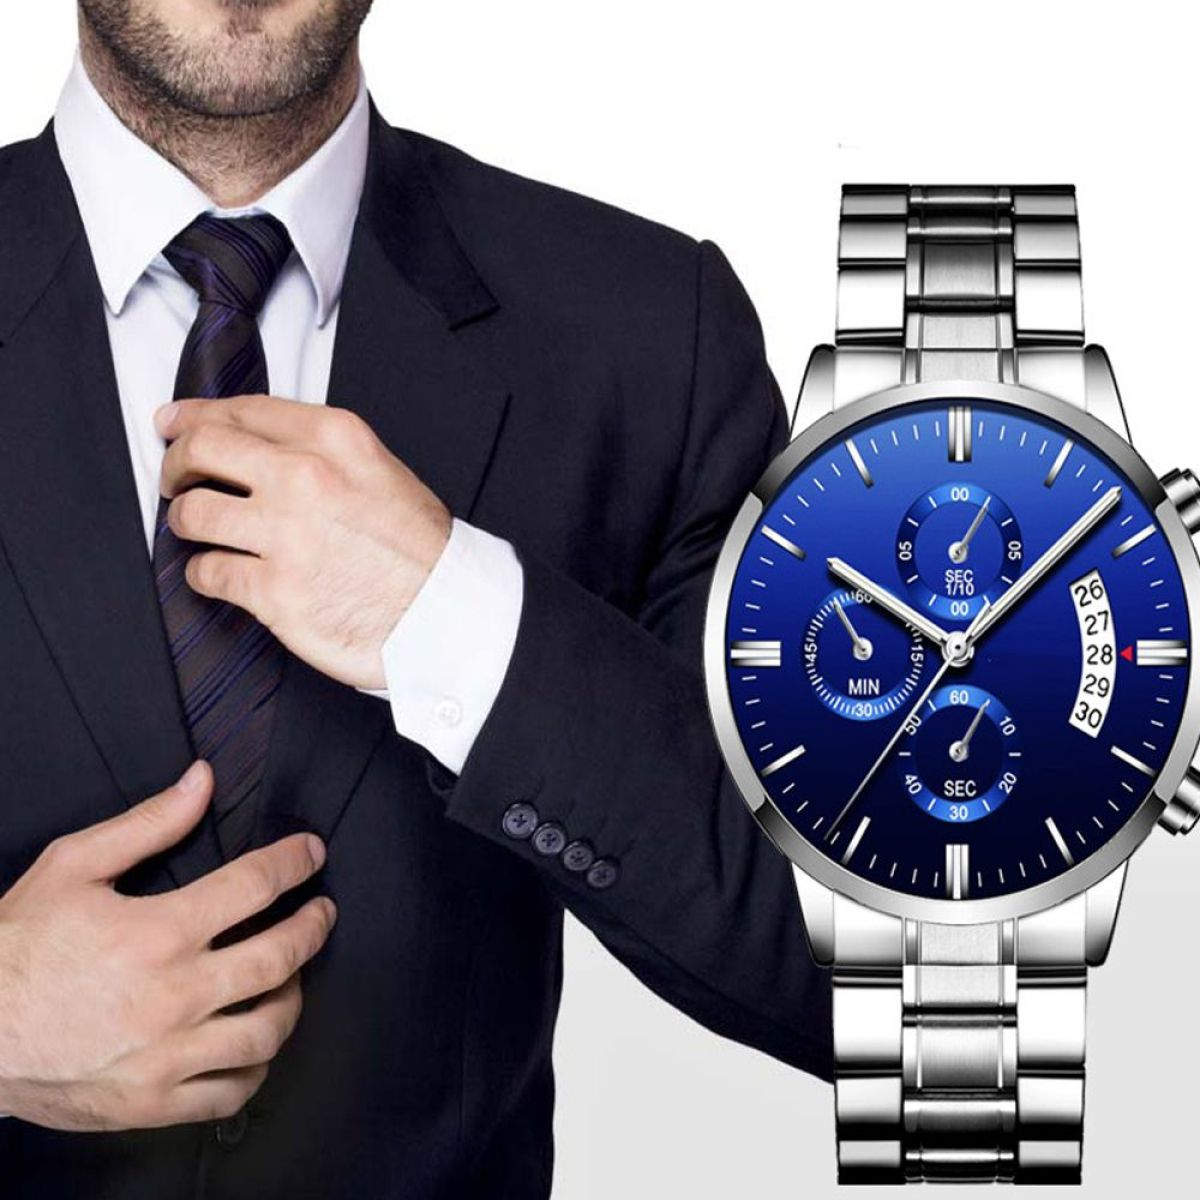 ELKUAIE Lässiger Business-Stil Smartwatch Edelstahl, Silber